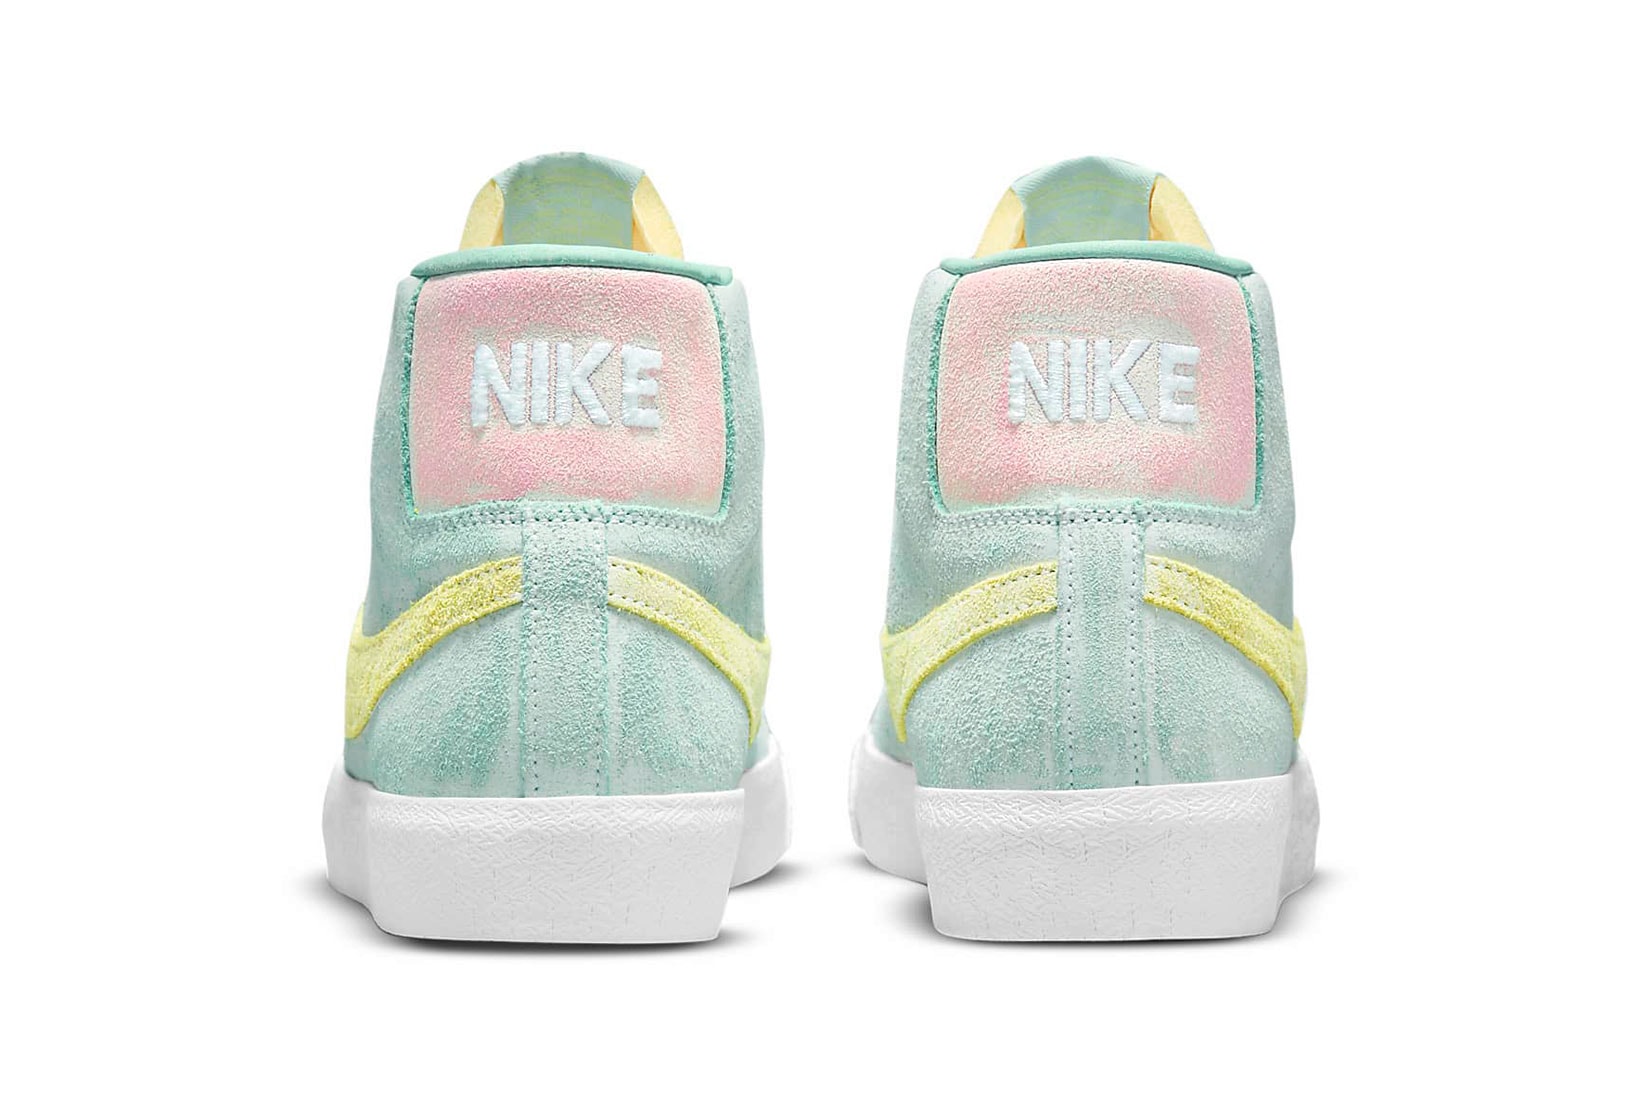 nike sb zoom blazer mid premium sneakers pastel green yellow pink white footwear shoes sneakerhead heel